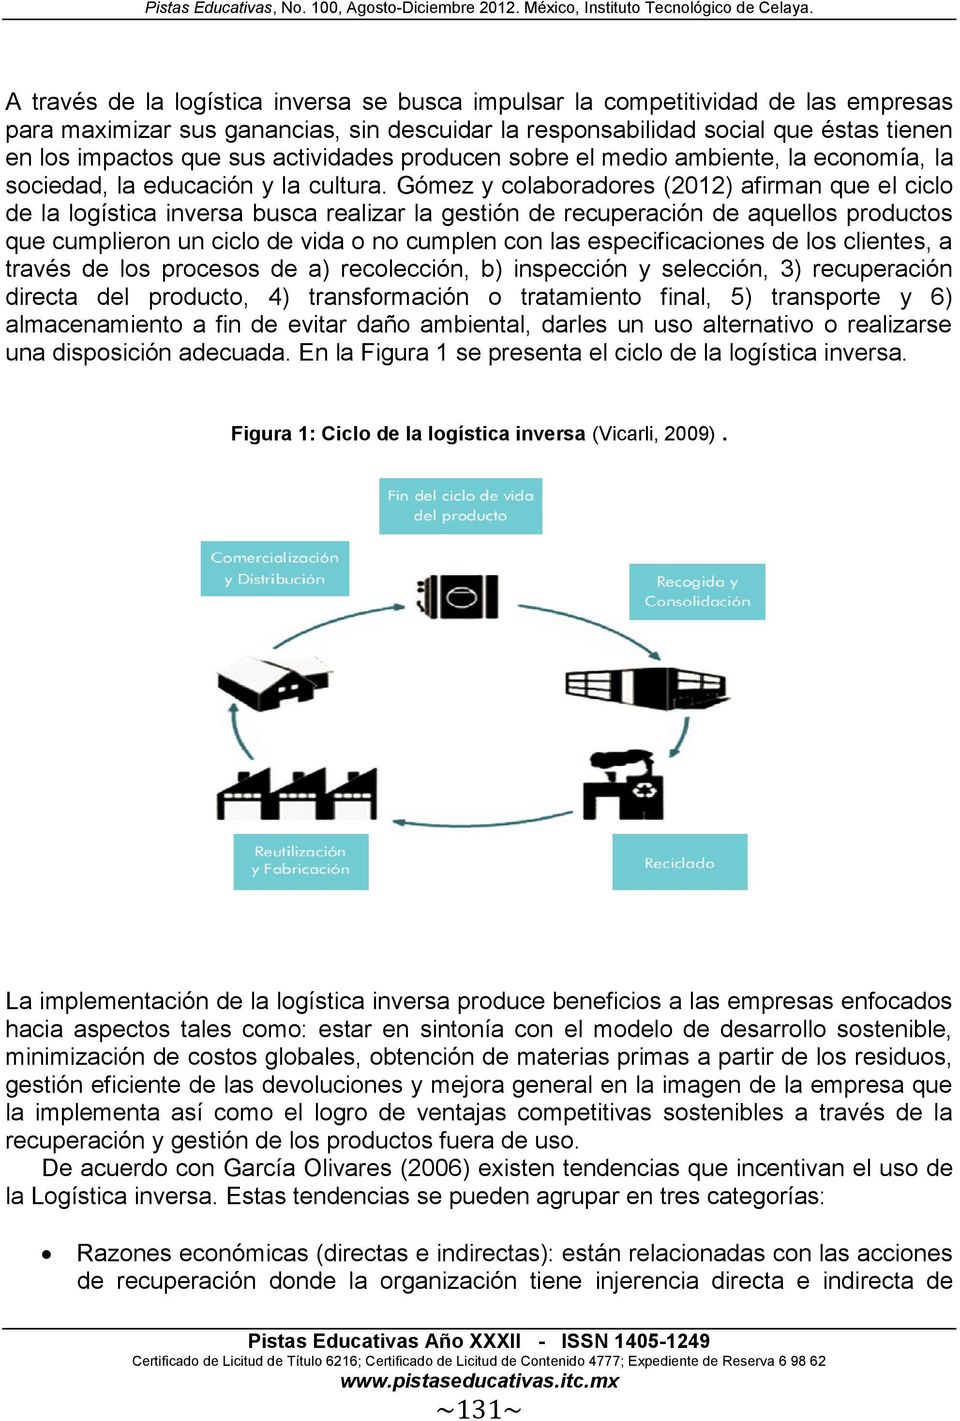 Gómez y colaboradores (2012) afirman que el ciclo de la logística inversa busca realizar la gestión de recuperación de aquellos productos que cumplieron un ciclo de vida o no cumplen con las